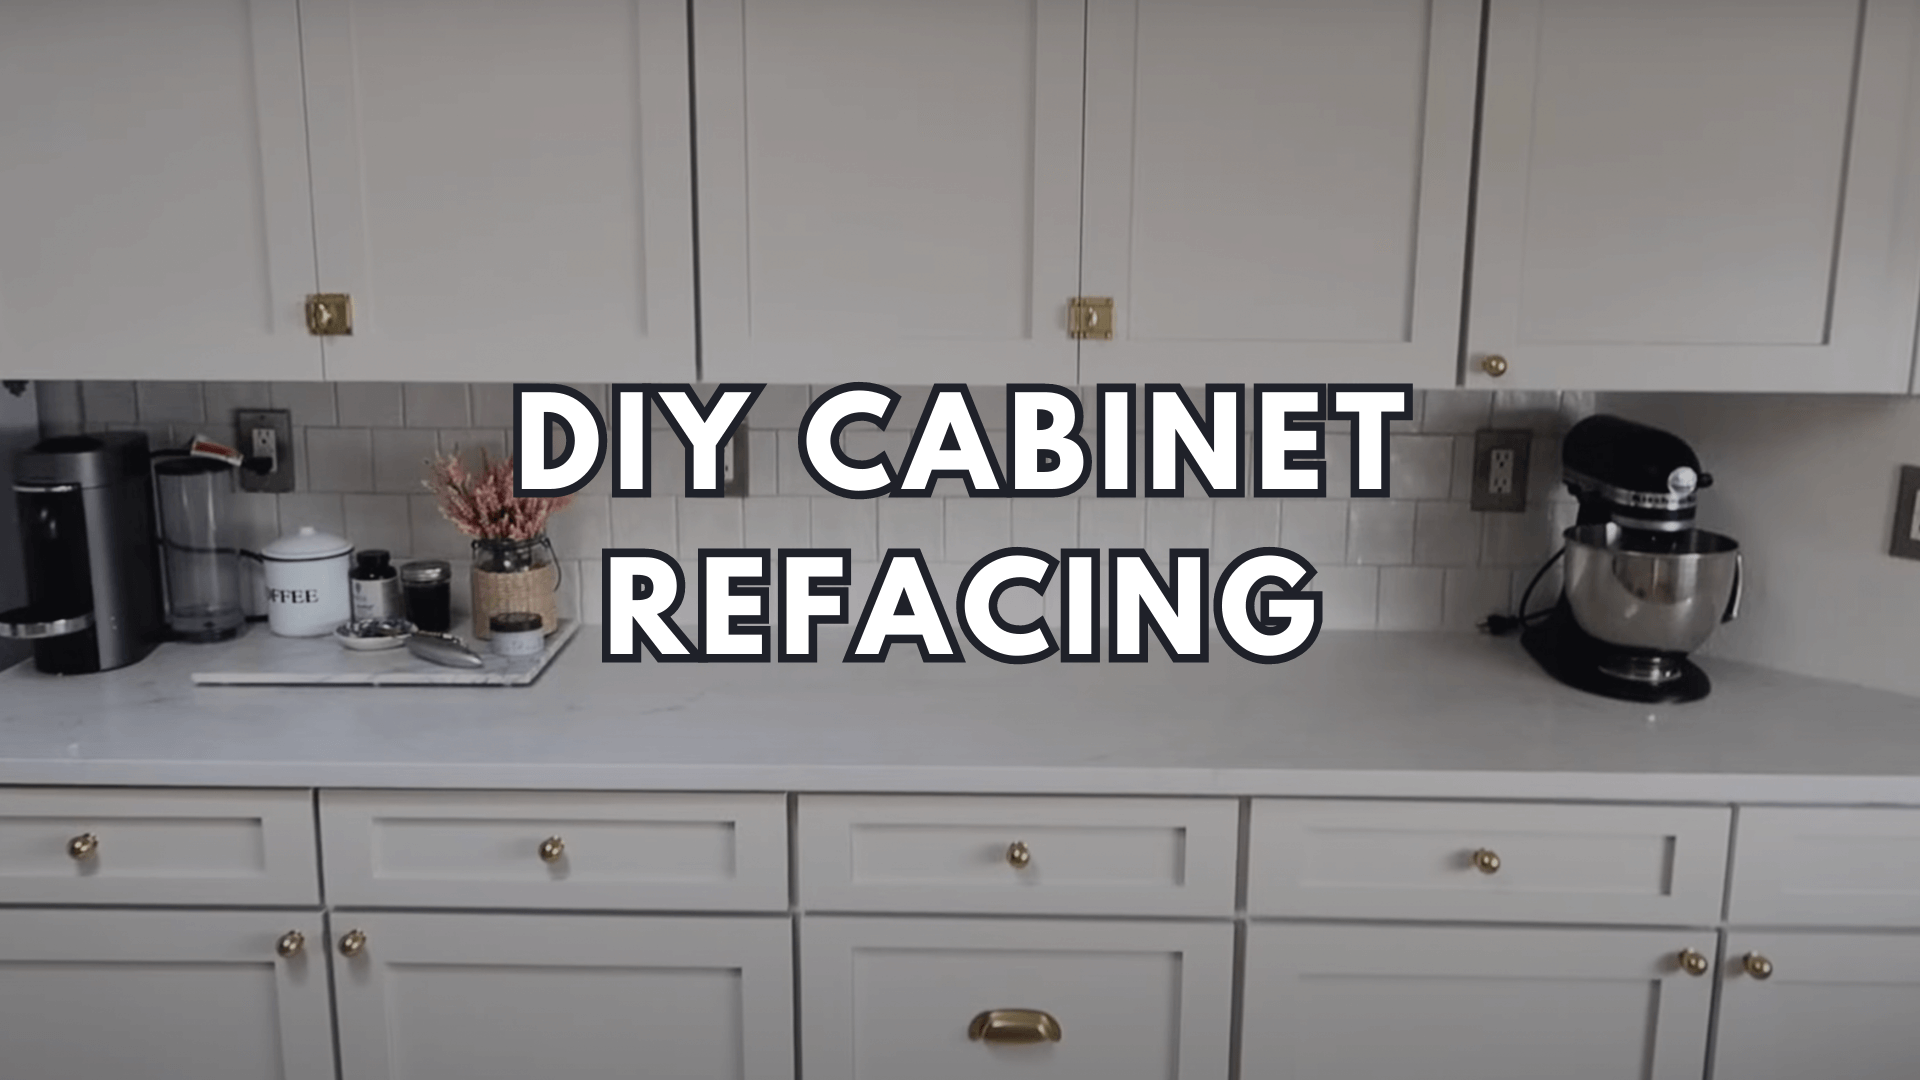 DIY Cabinet Refacing